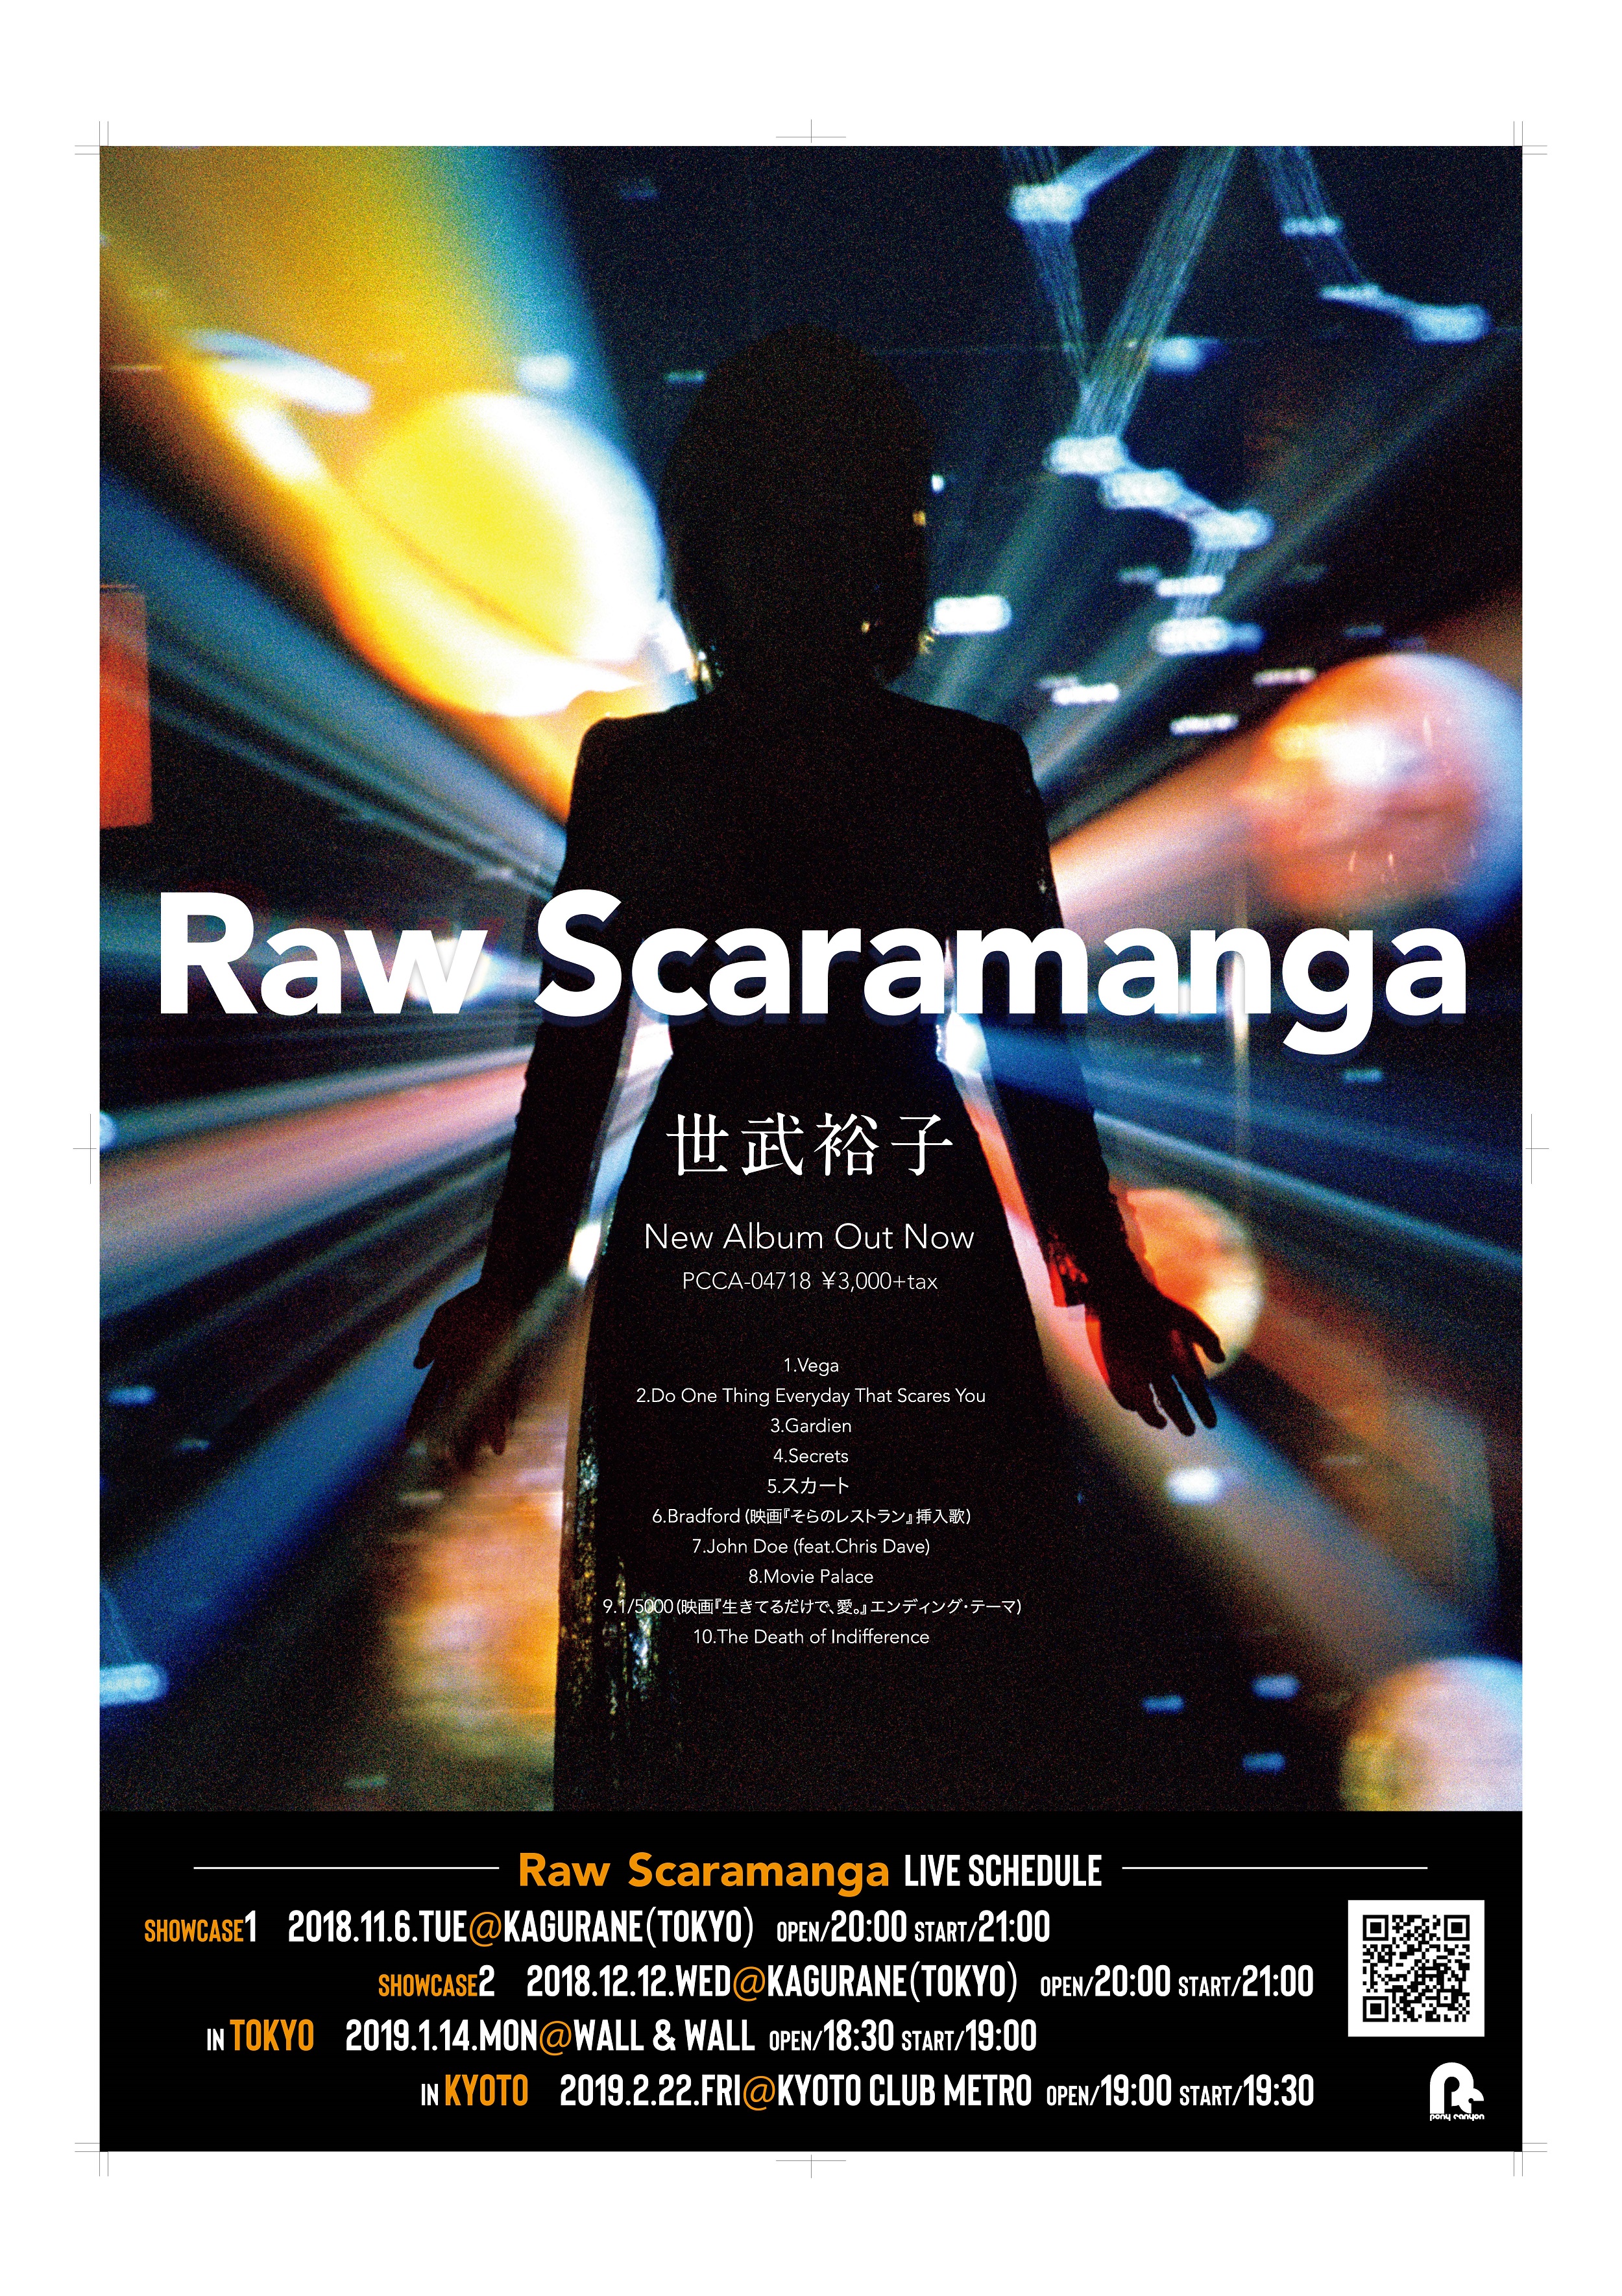 世武裕子『Raw Scaramanga』in Tokyo 青山イベントスペース WALLWALL